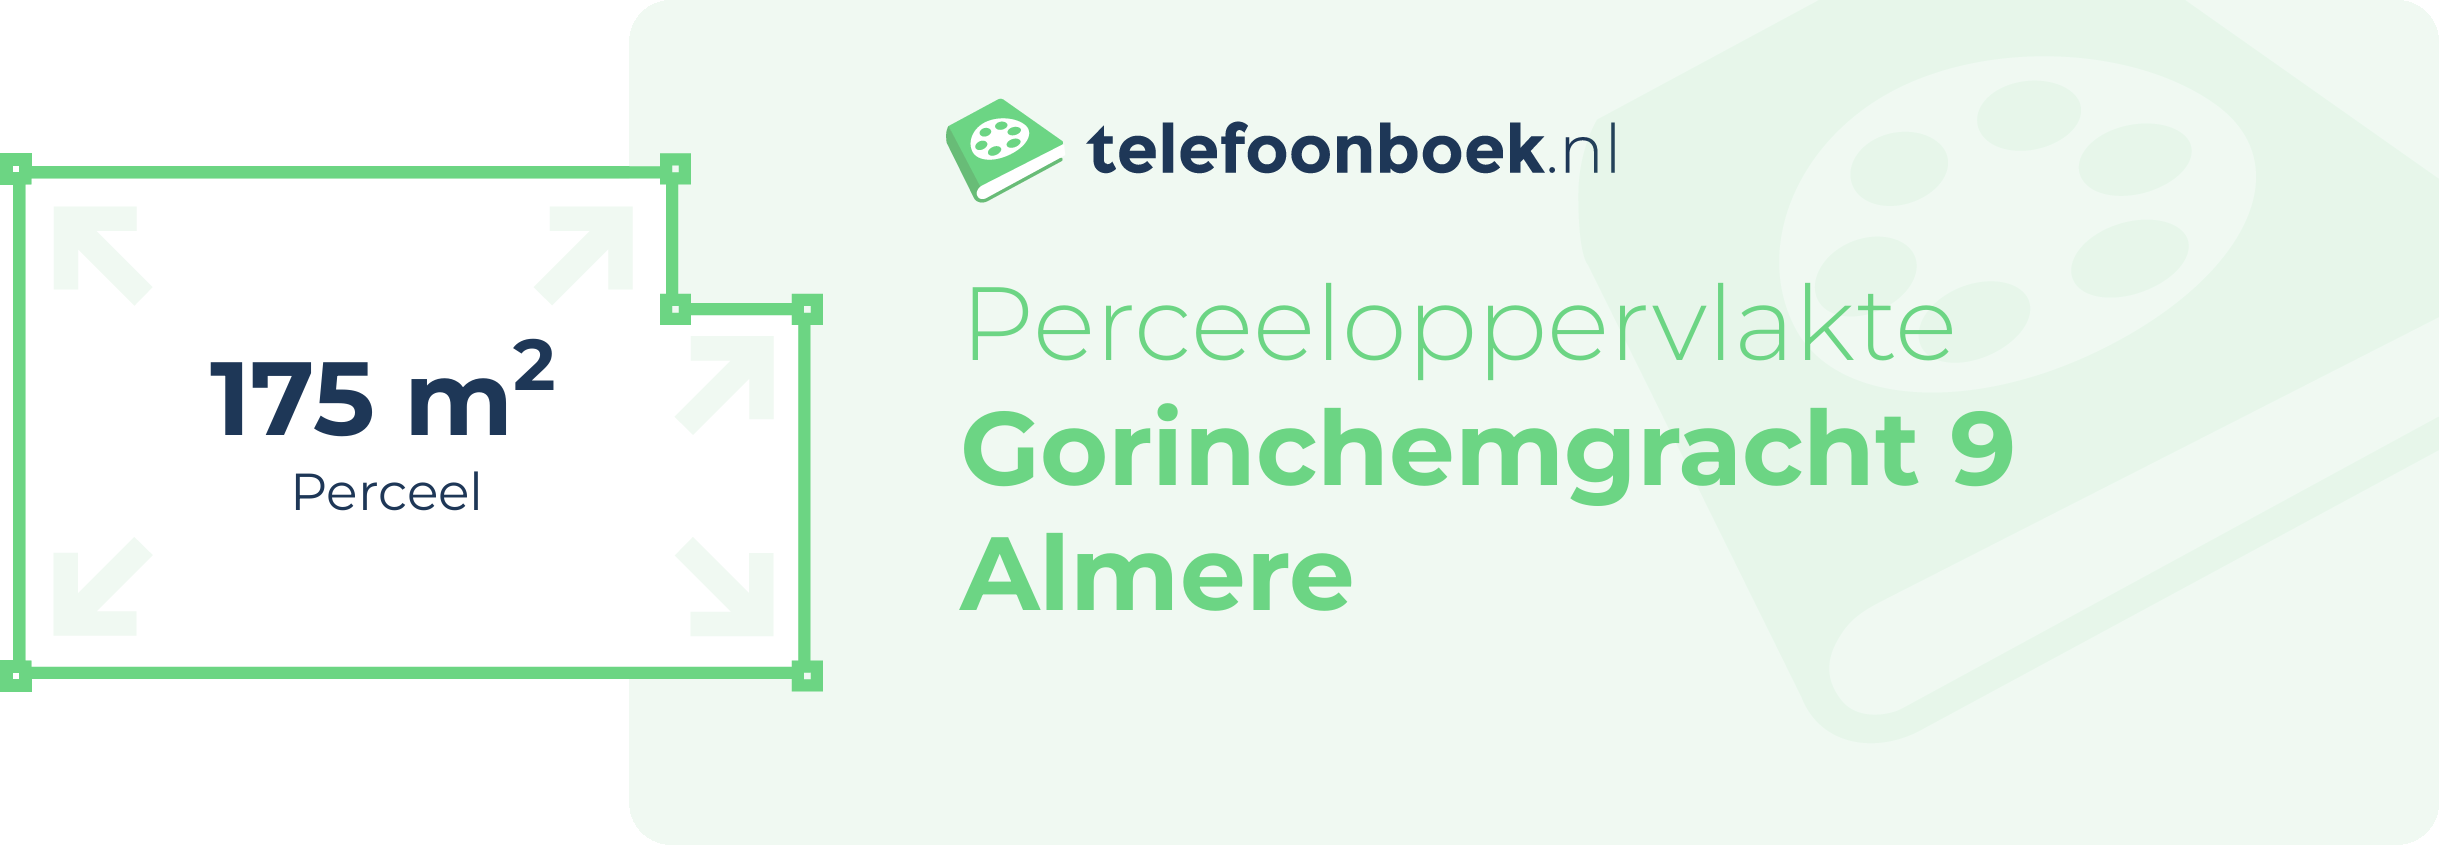 Perceeloppervlakte Gorinchemgracht 9 Almere